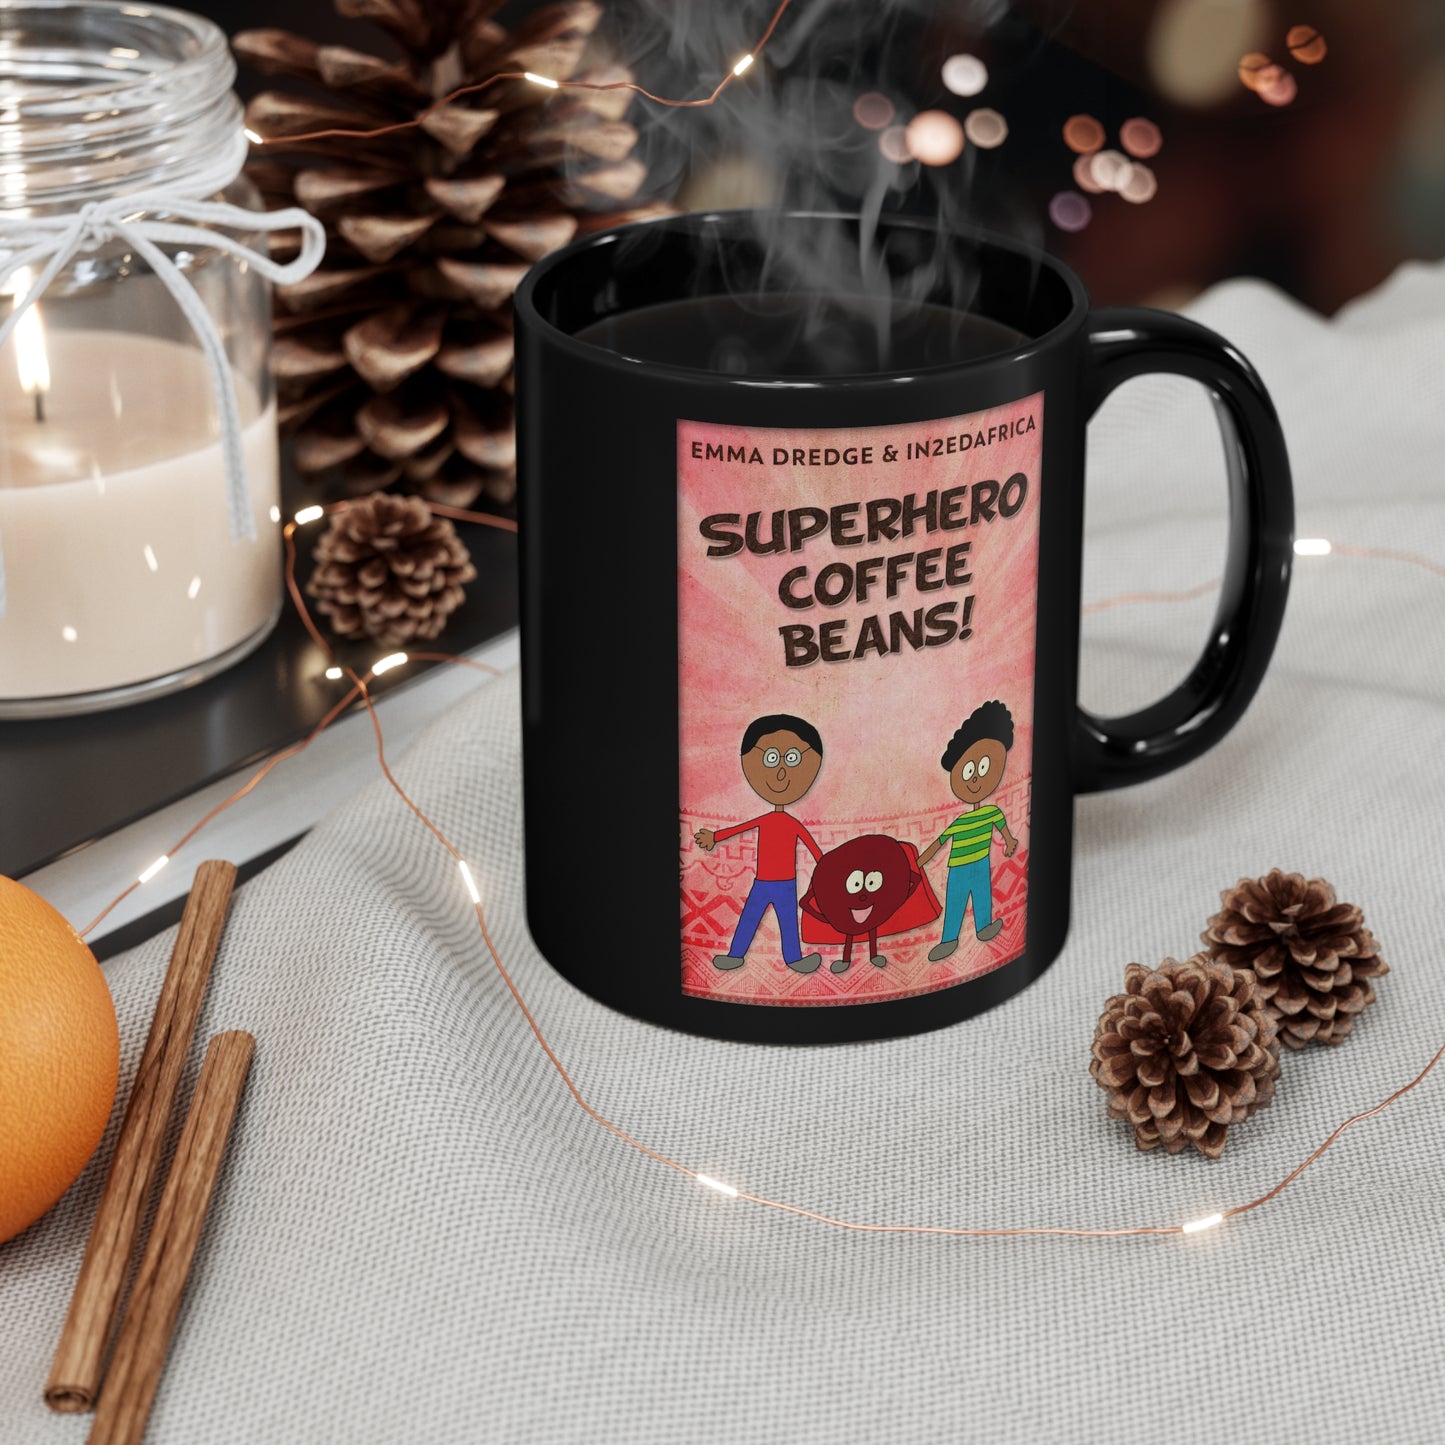 Superhero Coffee Beans! - Black Coffee Mug